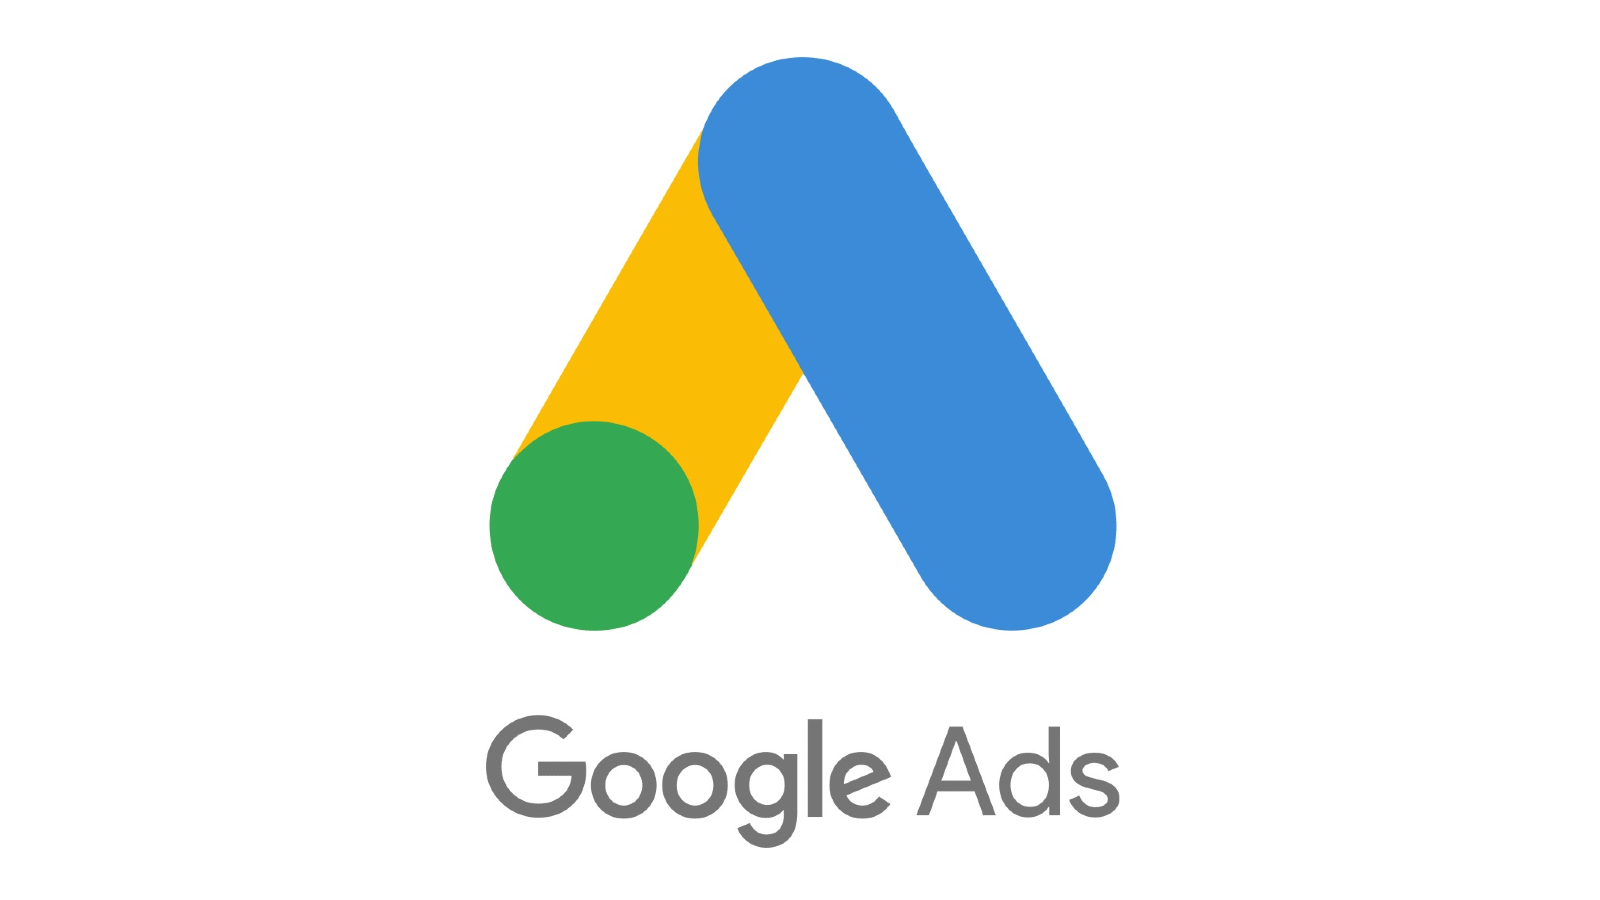 Google Ads met à jour ses règlements sur les contenus politiques piratés et les événements sensibles